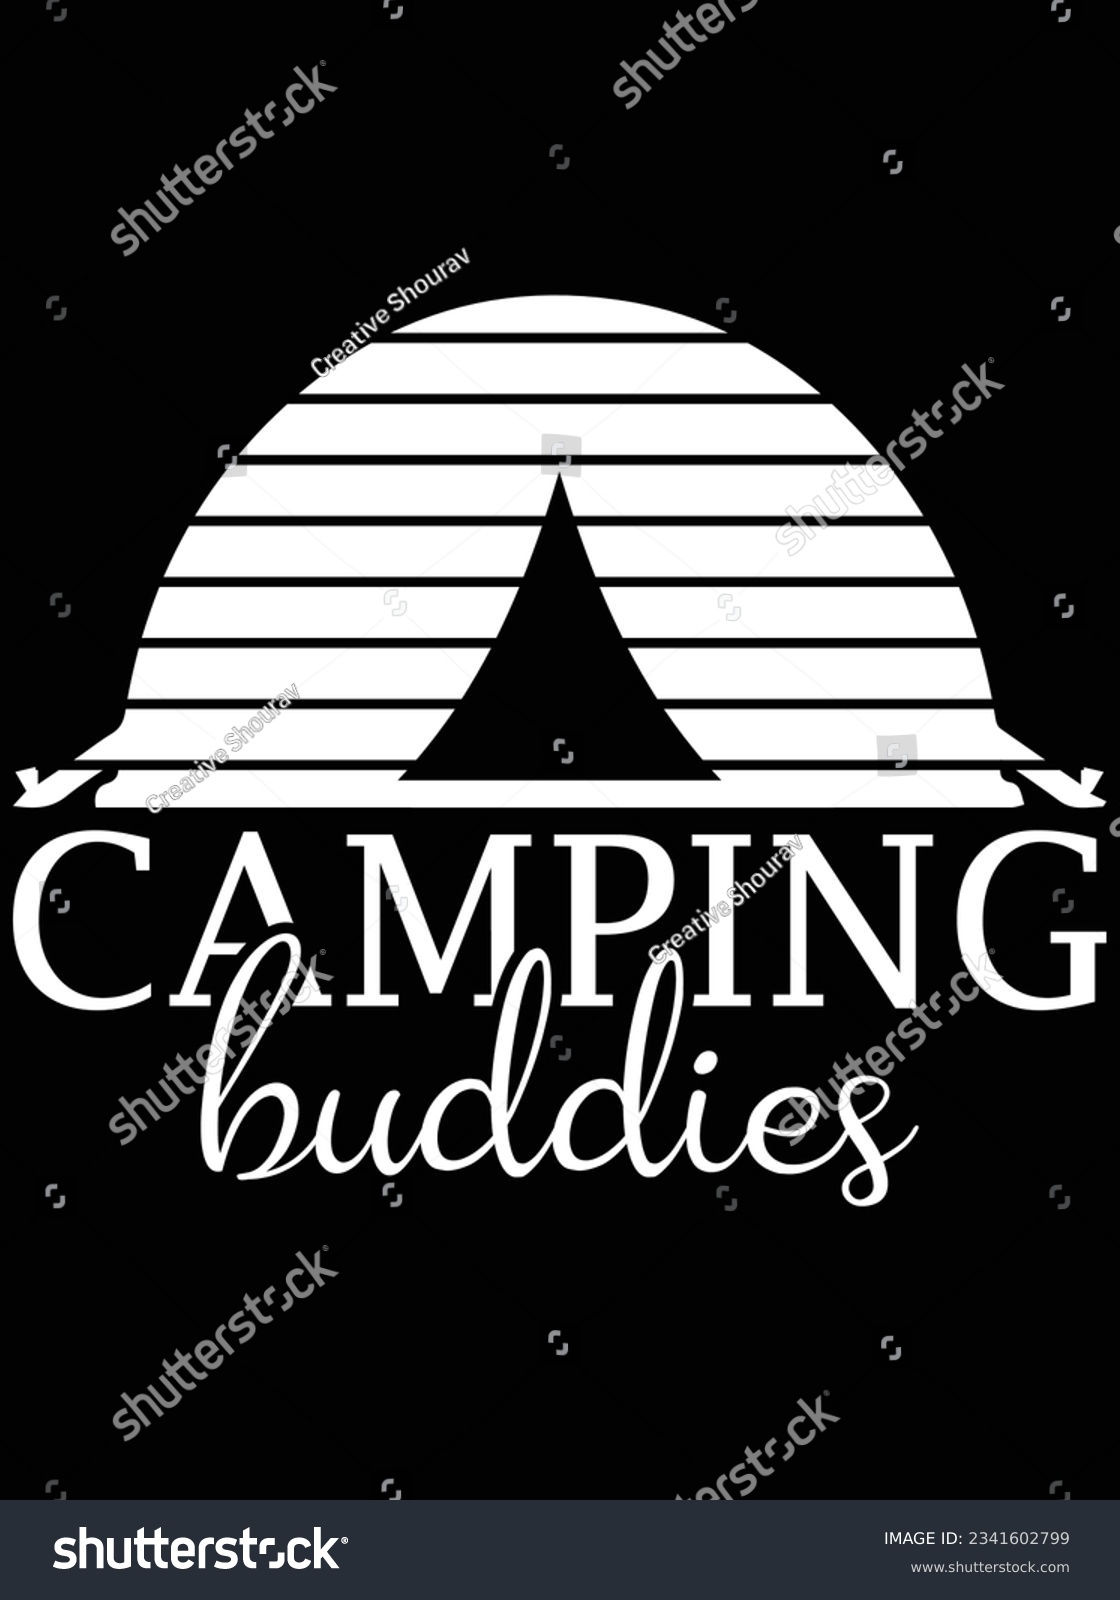 SVG of Camping buddies vector art design, eps file. design file for t-shirt. SVG, EPS cuttable design file svg